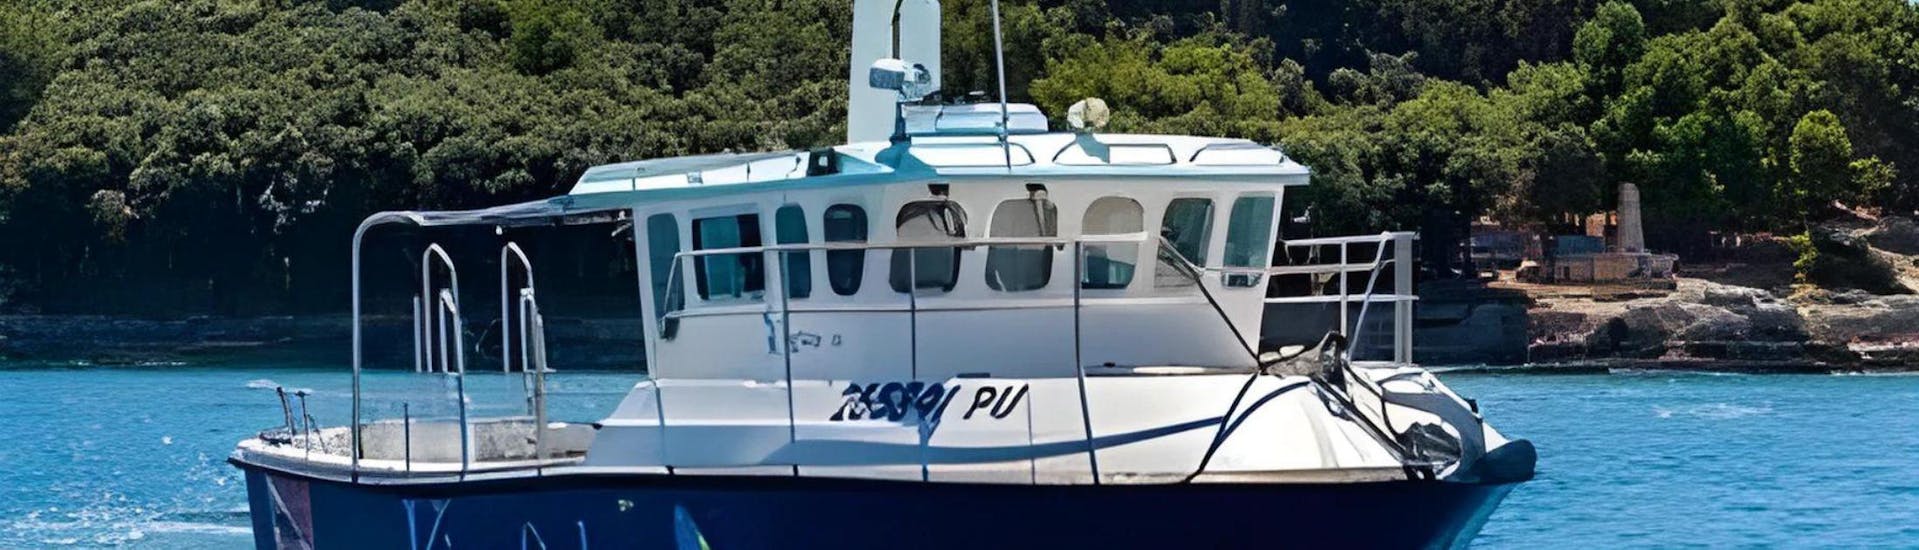 Eines der Boote von Pula Boat Tours Croatia auf dem Wasser, bereit für die Fahrt entlang der Küste von Pula. 